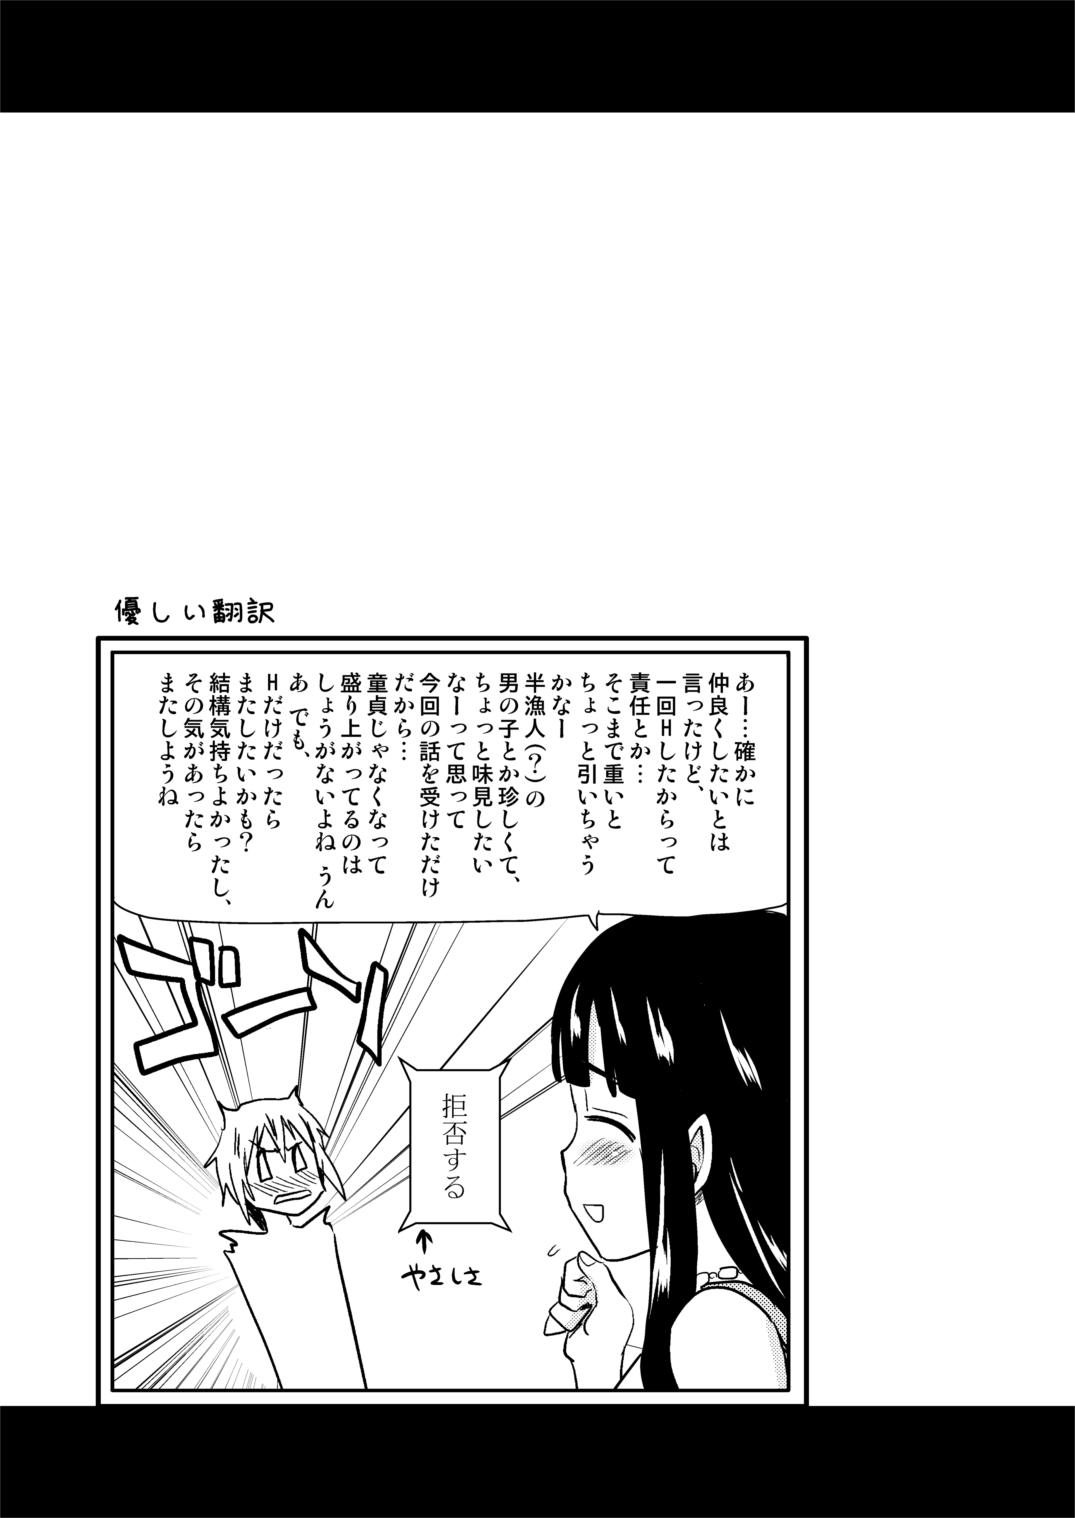 Muchimuchi Manga 14P 15